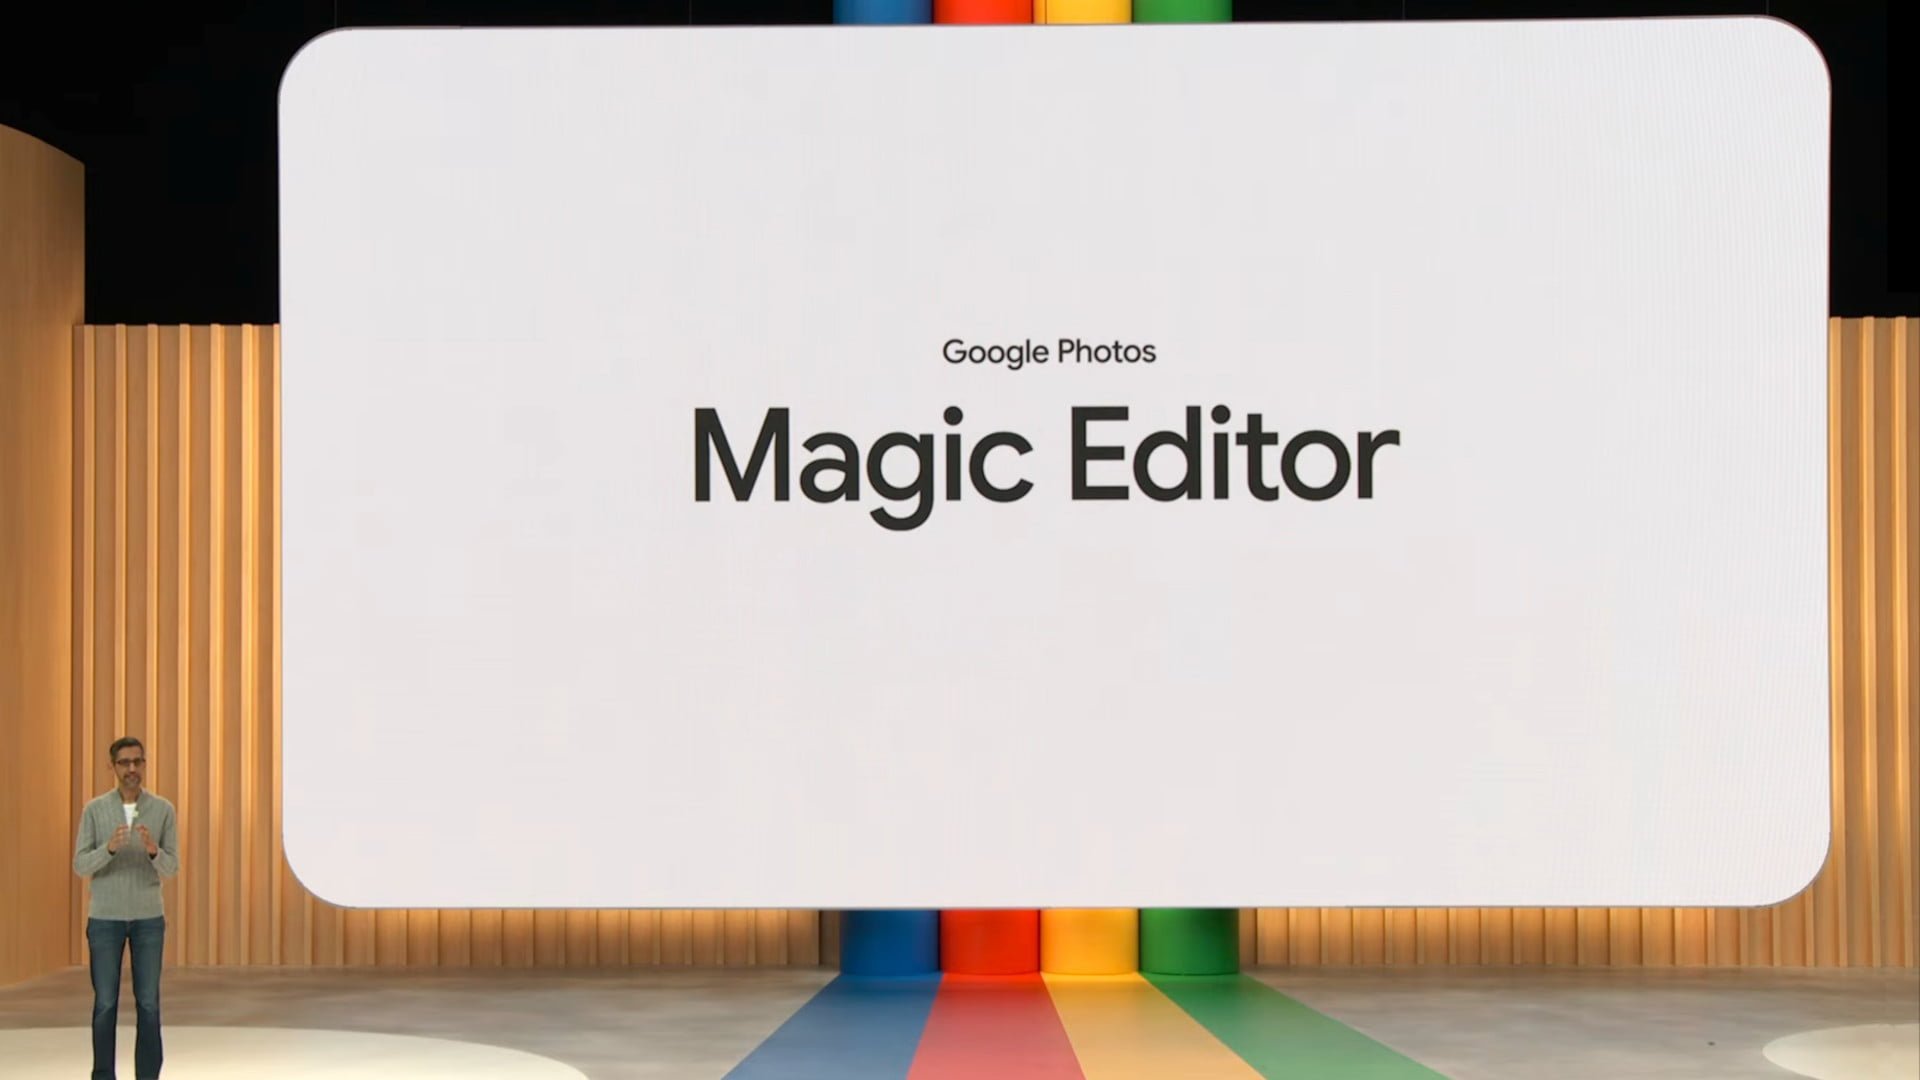 L'éditeur magique de Google Photos ne permet pas de modifier les visages, les documents ou les objets de grande taille.